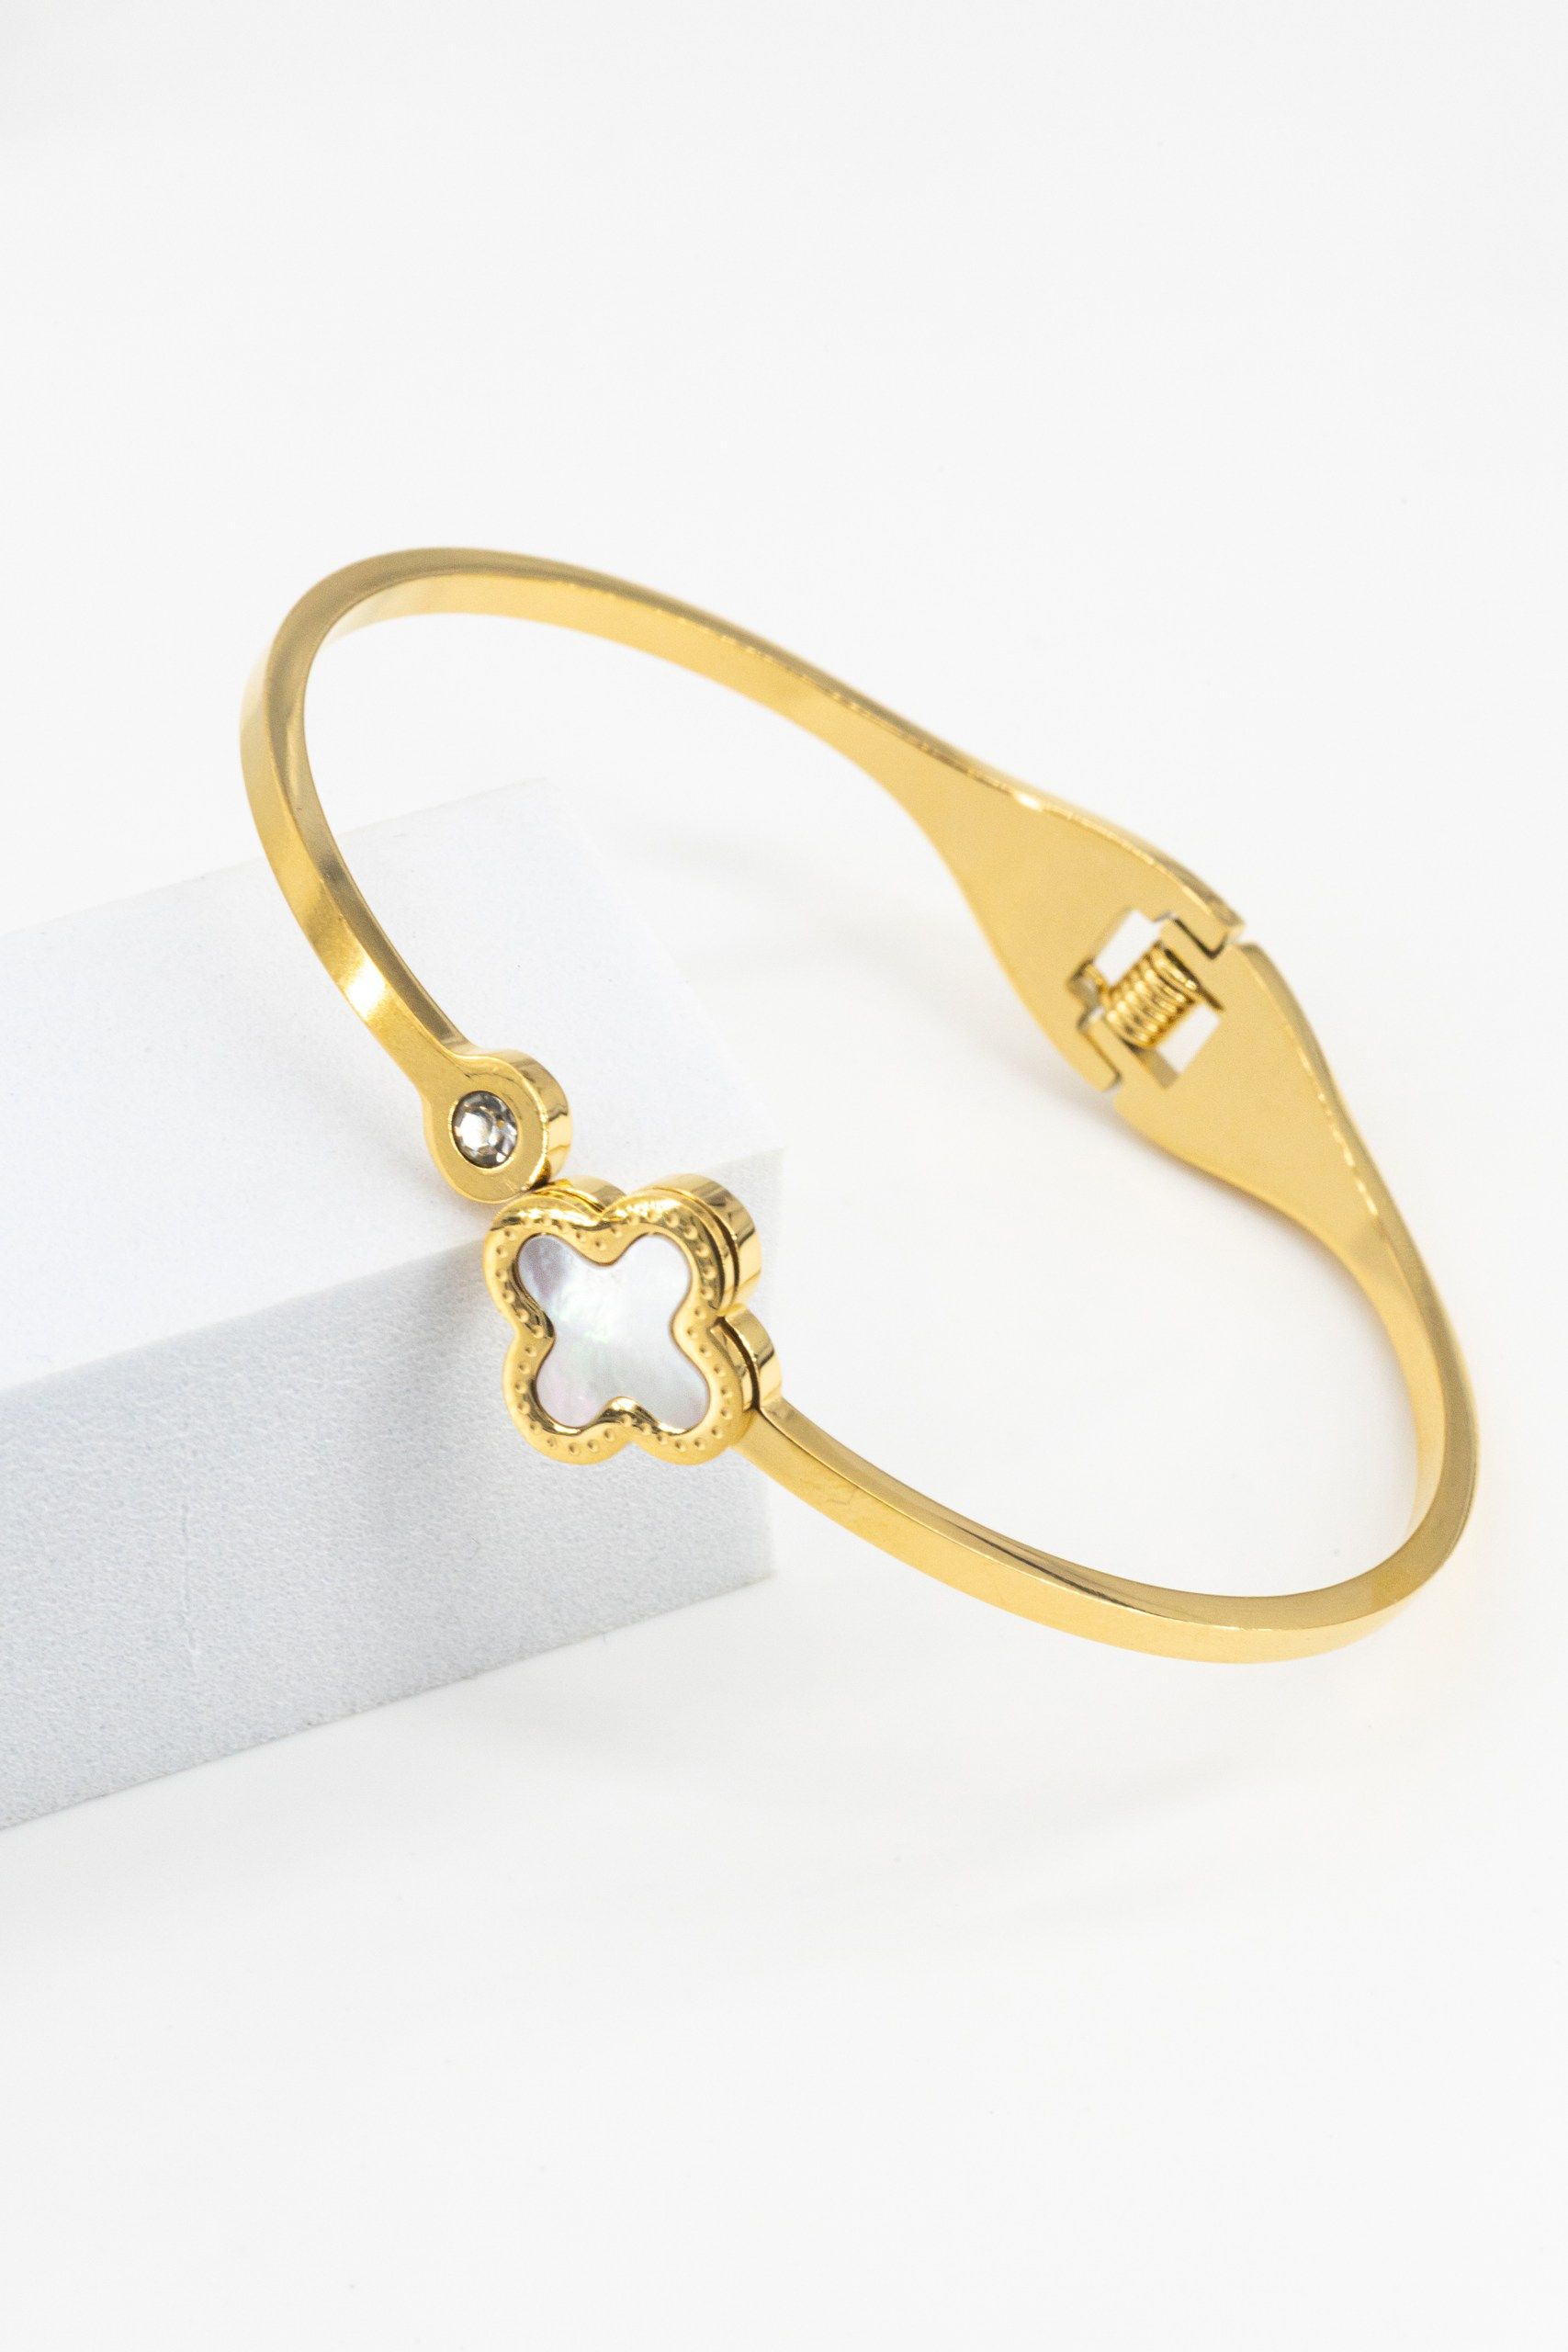 Женский золотой браслет — свидетельство стиля и вкуса